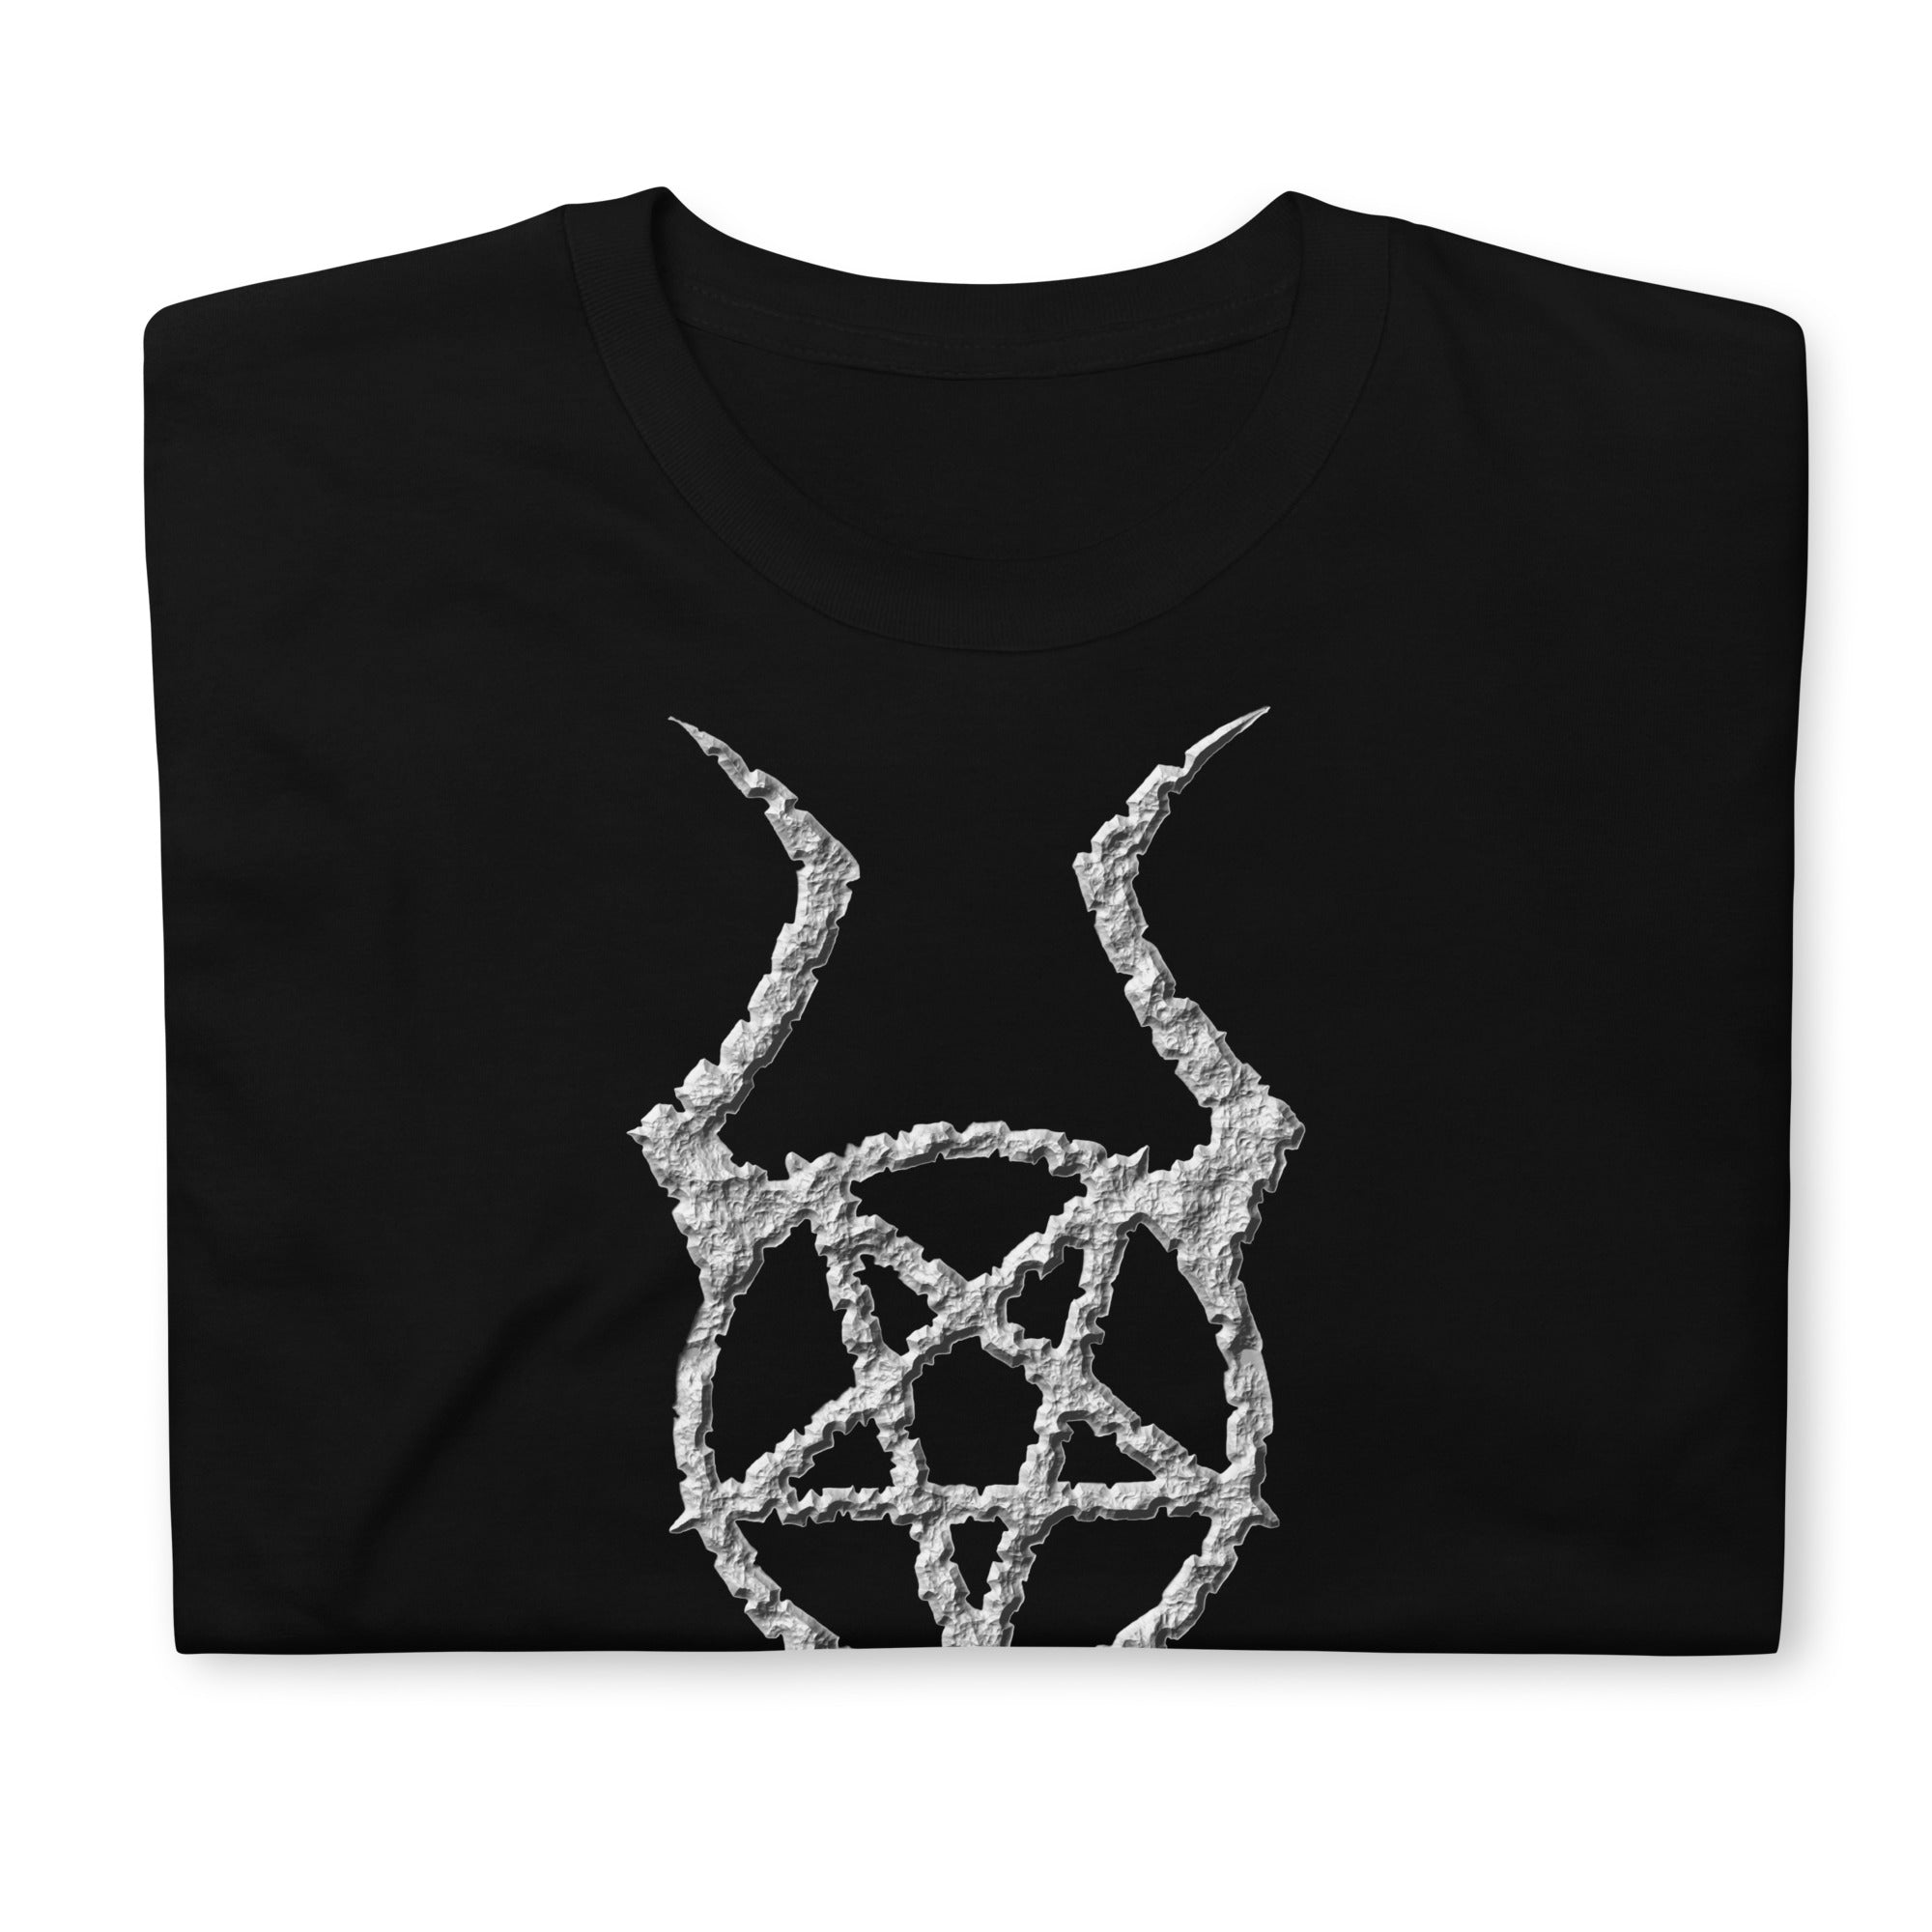 Ancient Stone Horned Pentacross Pentagram Cross Men's Short Sleeve T-Shirt - Edge of Life Designs